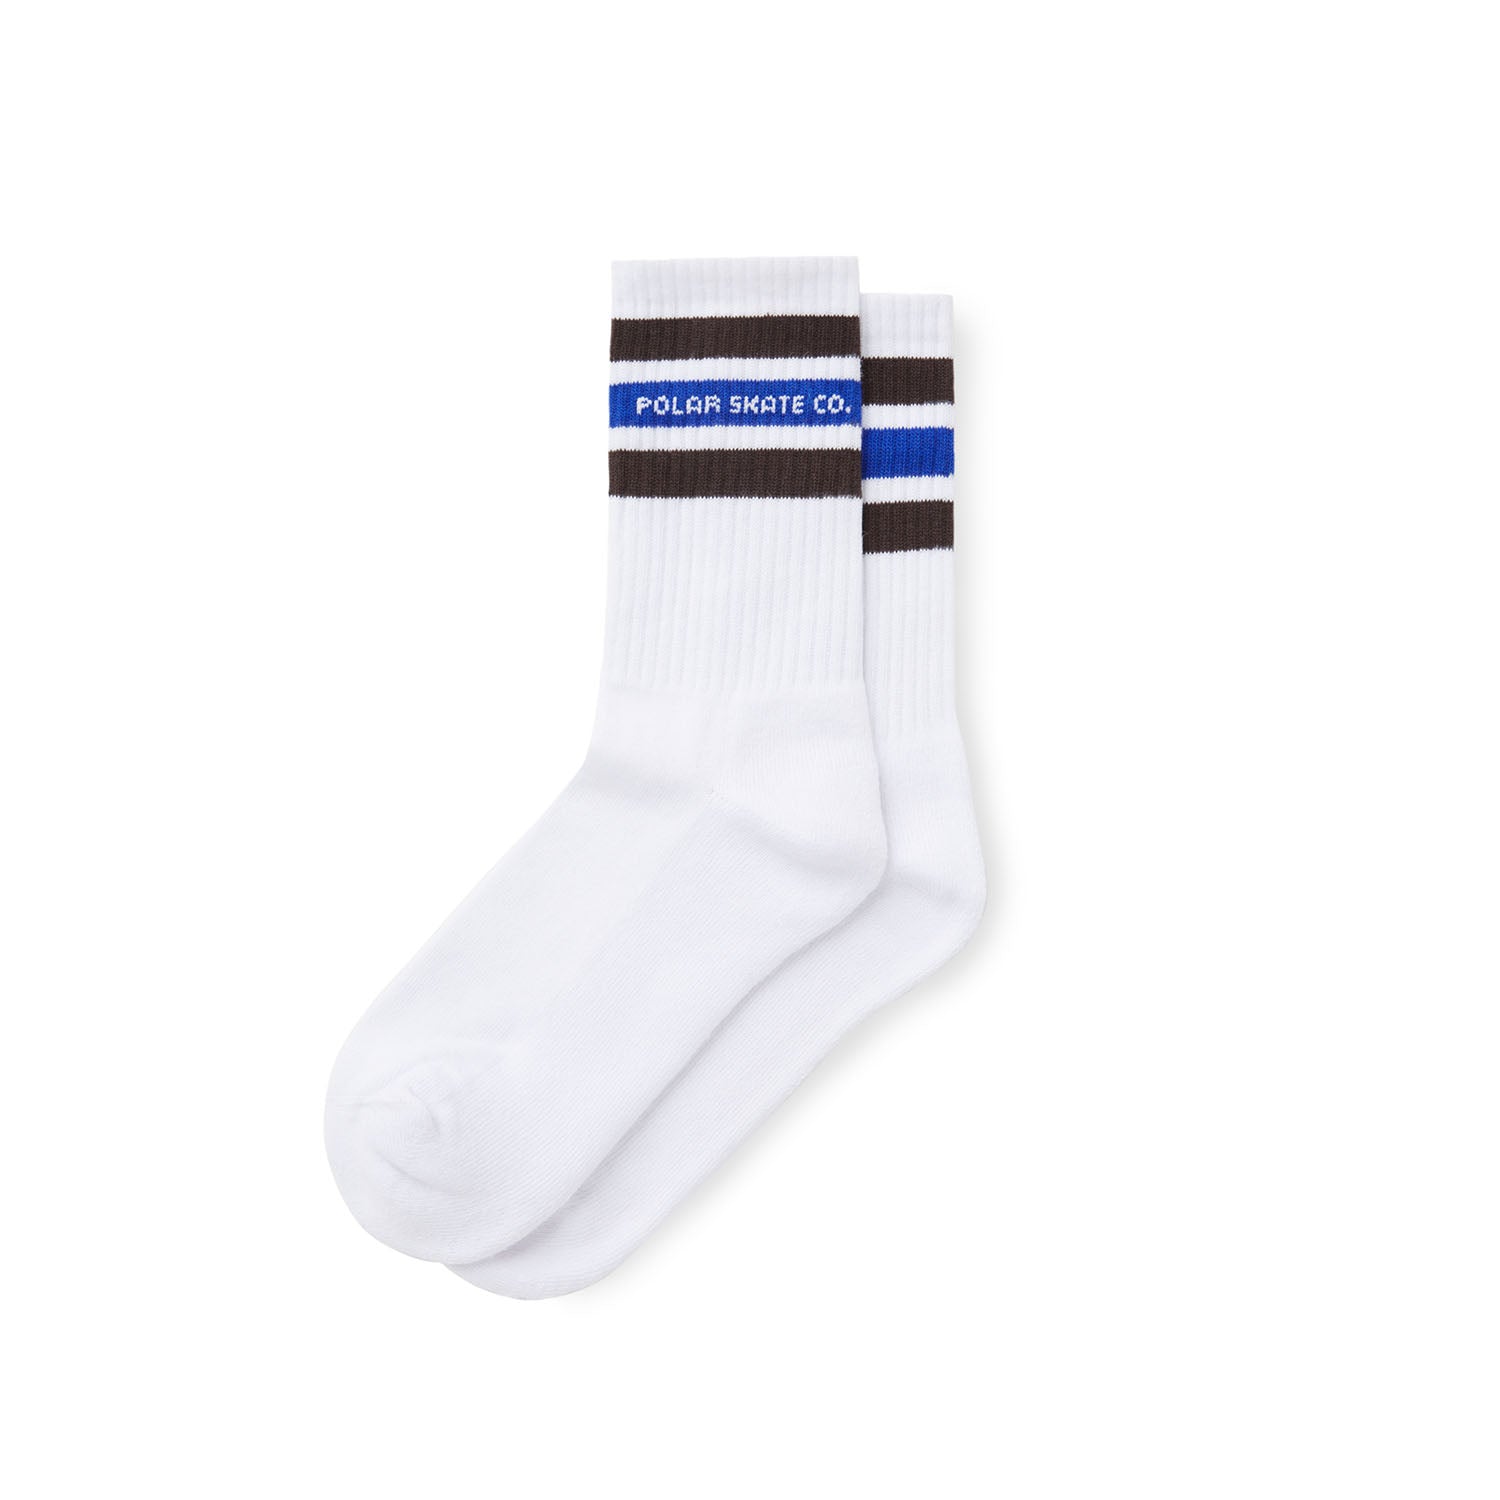 Fat Stripe Socks, White / Brown / Blue